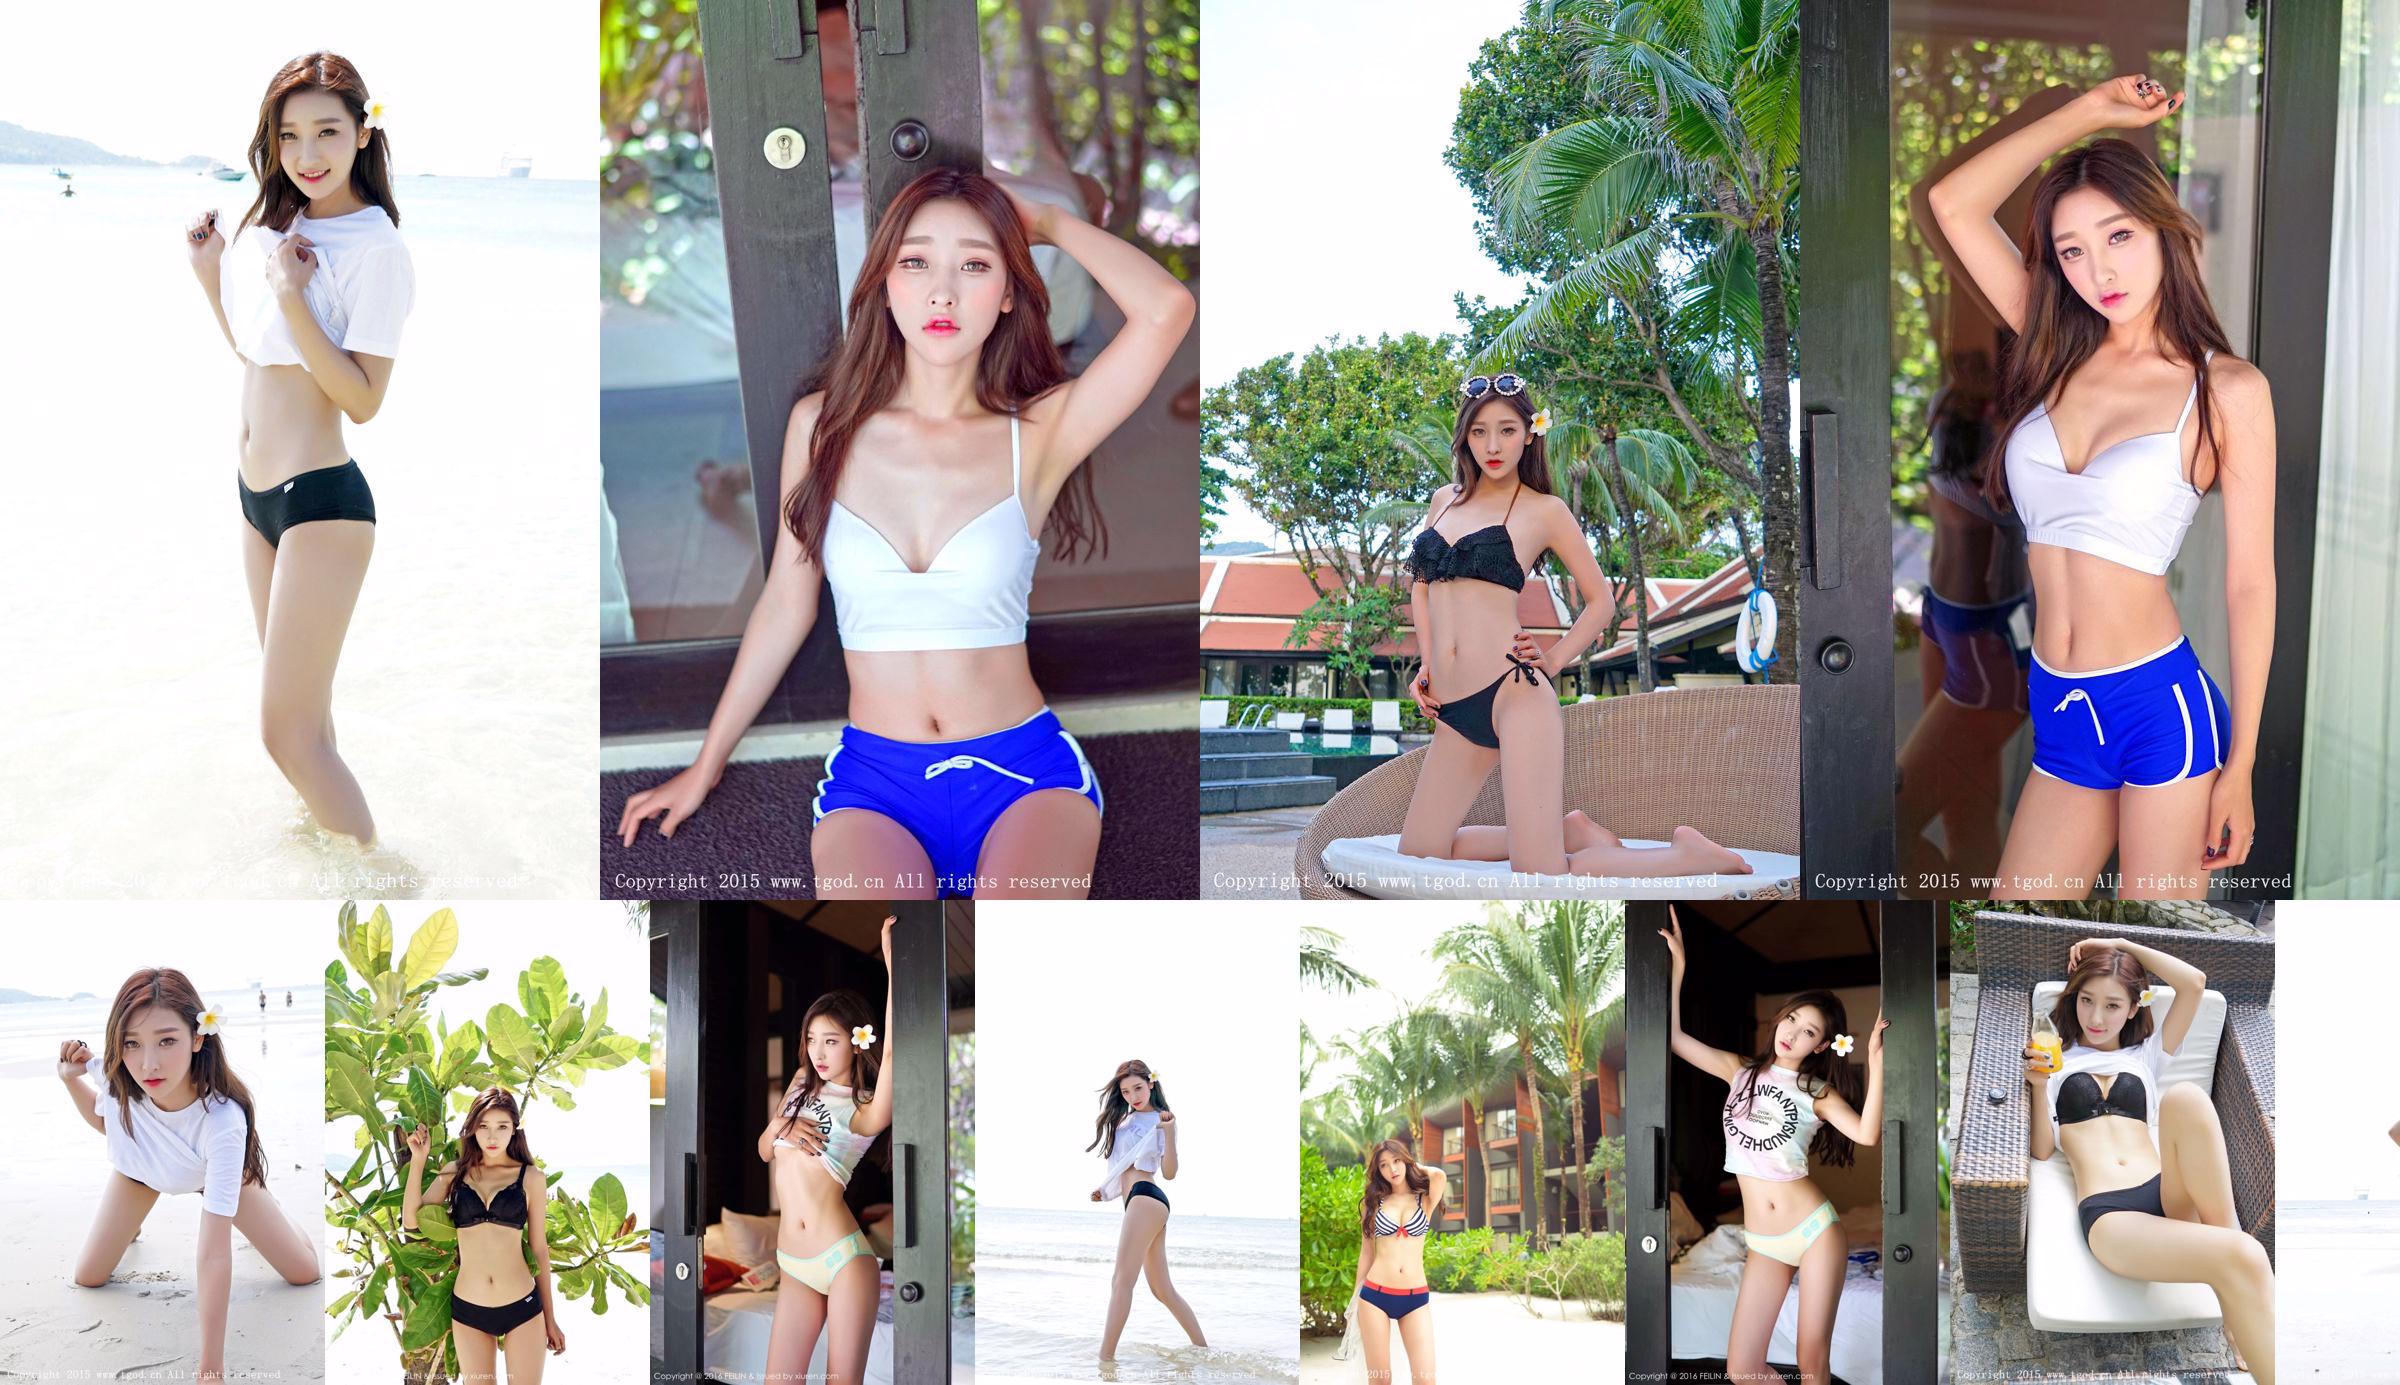 Li Xiaoqiao JoJo Loạt ảnh thẩm mỹ bên bờ biển "Phuket Travel Shooting" [Nữ thần đẩy TGOD] No.63a0f7 Trang 1